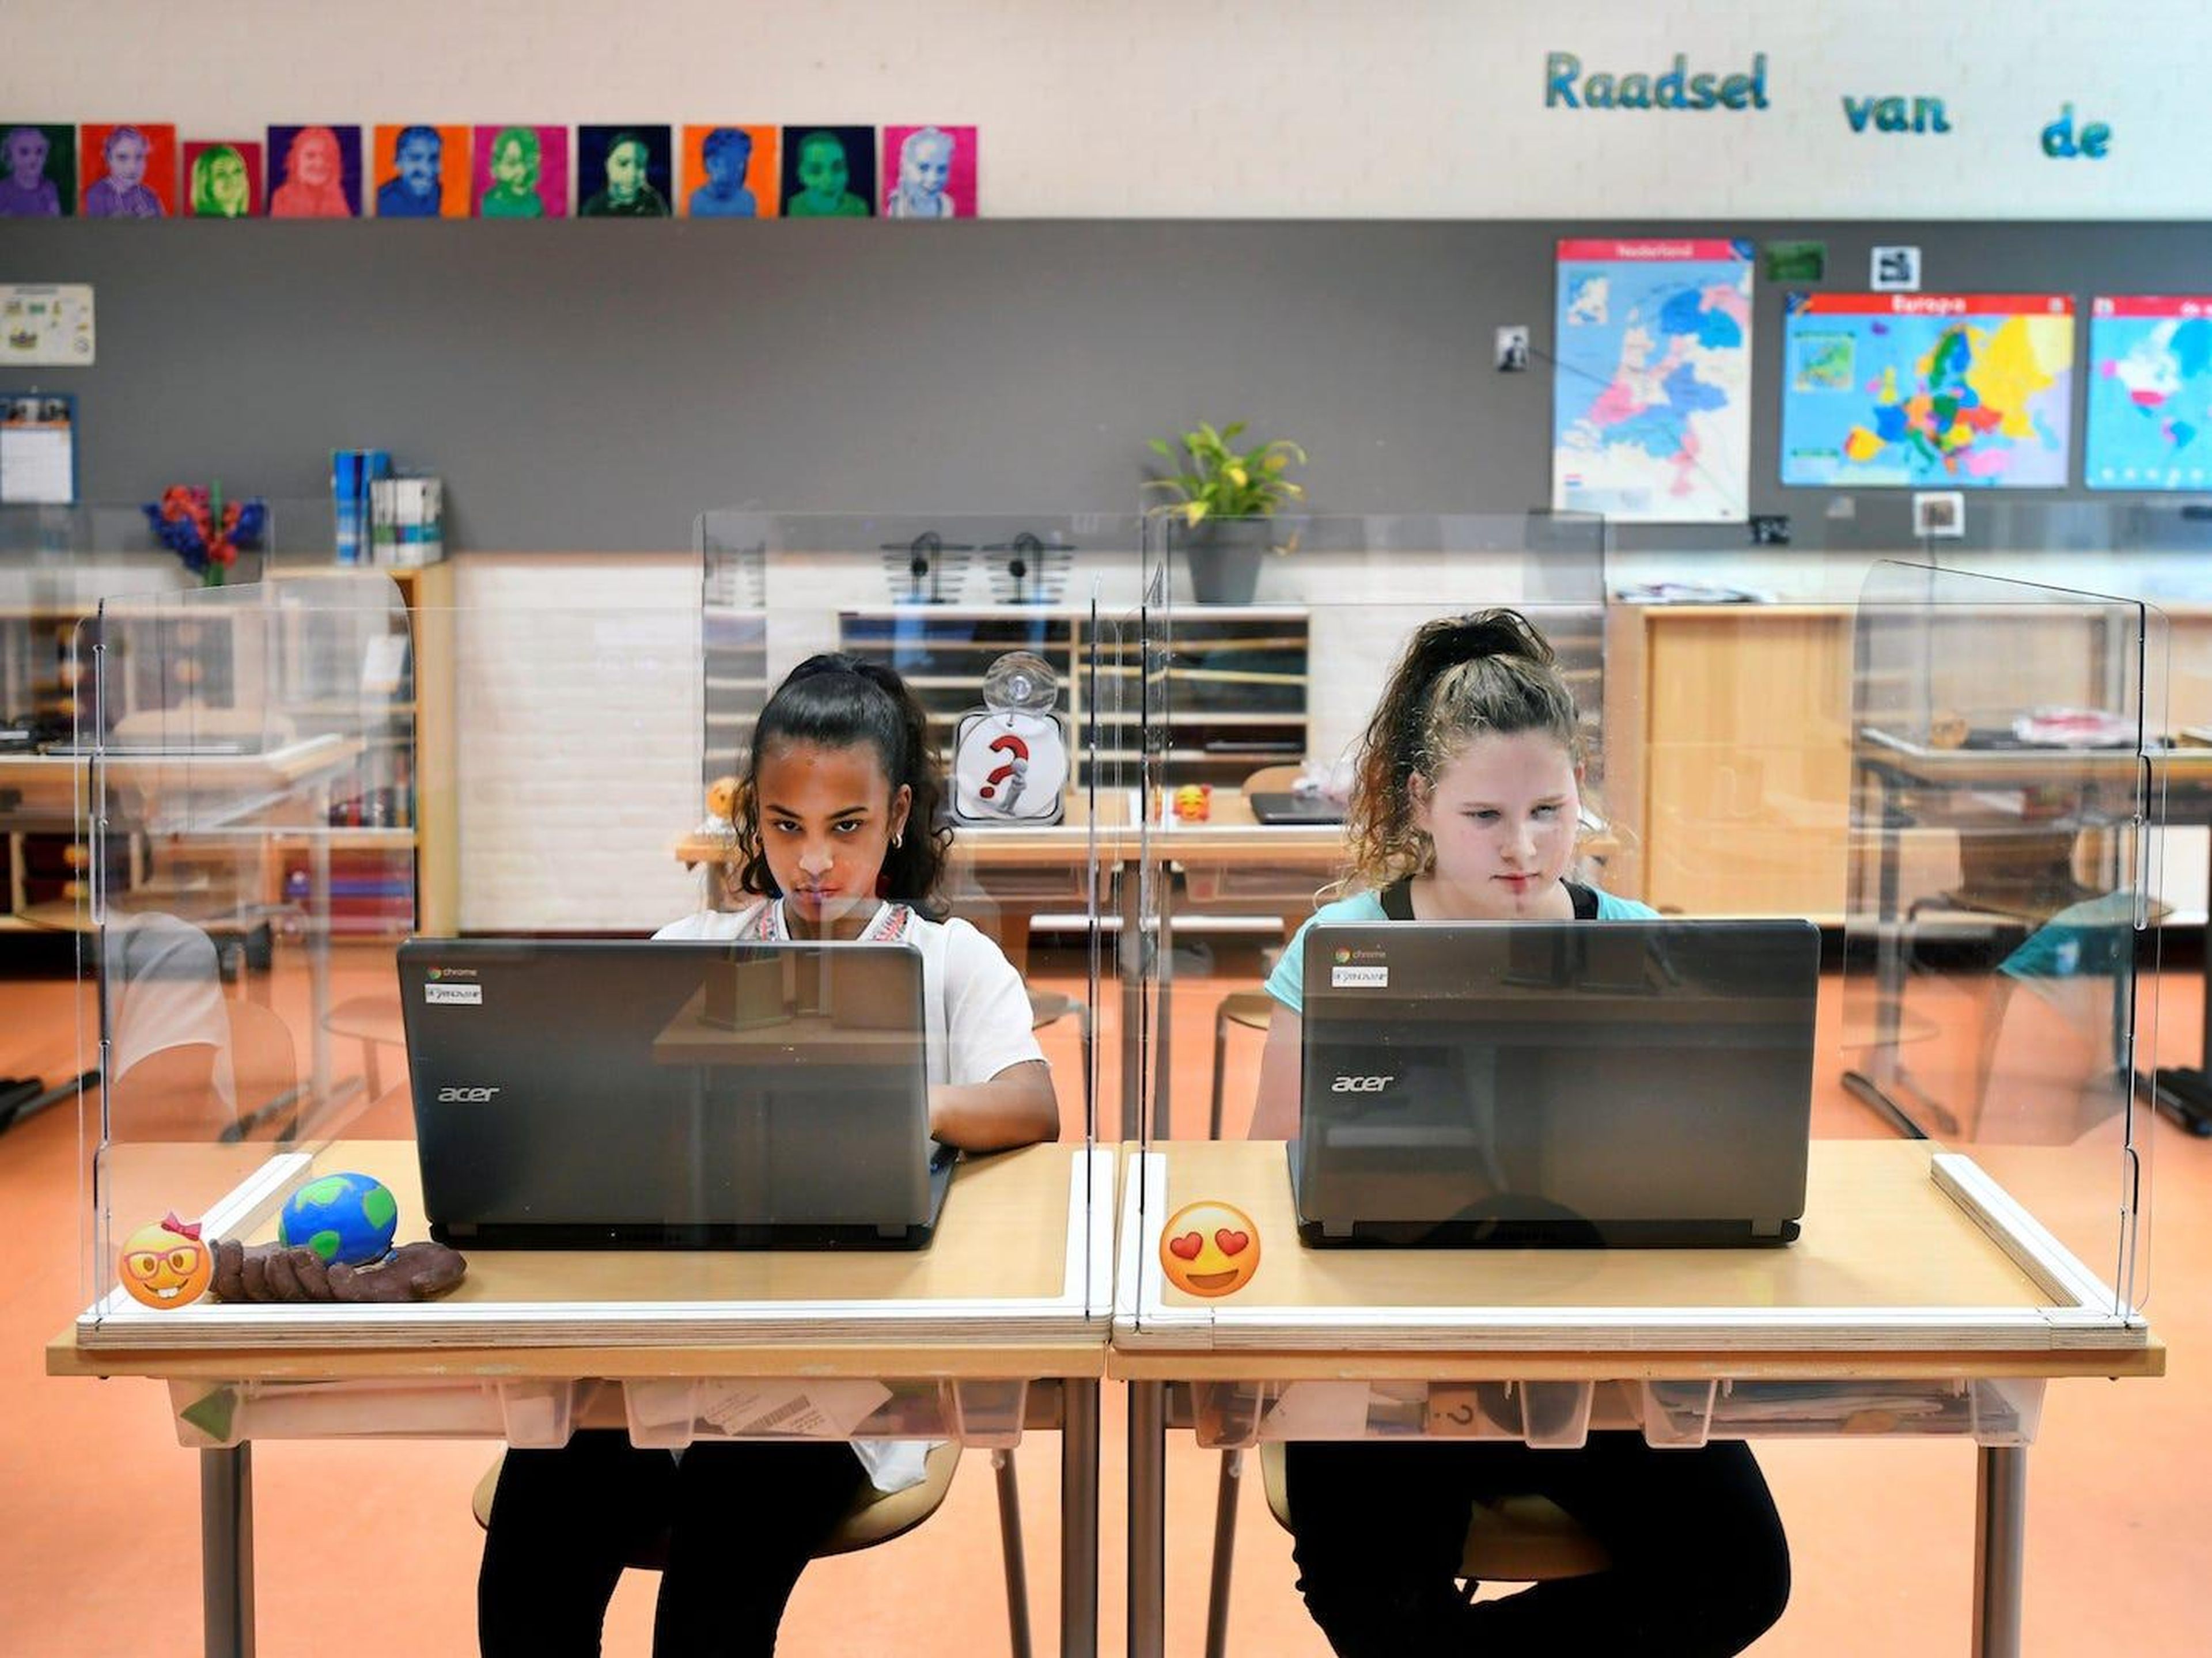 Alumnos sentados detrás de tableros de plexiglás asisten a clase en una escuela primaria en Den Bosch, Países Bajos, 8 de mayo de 2020.